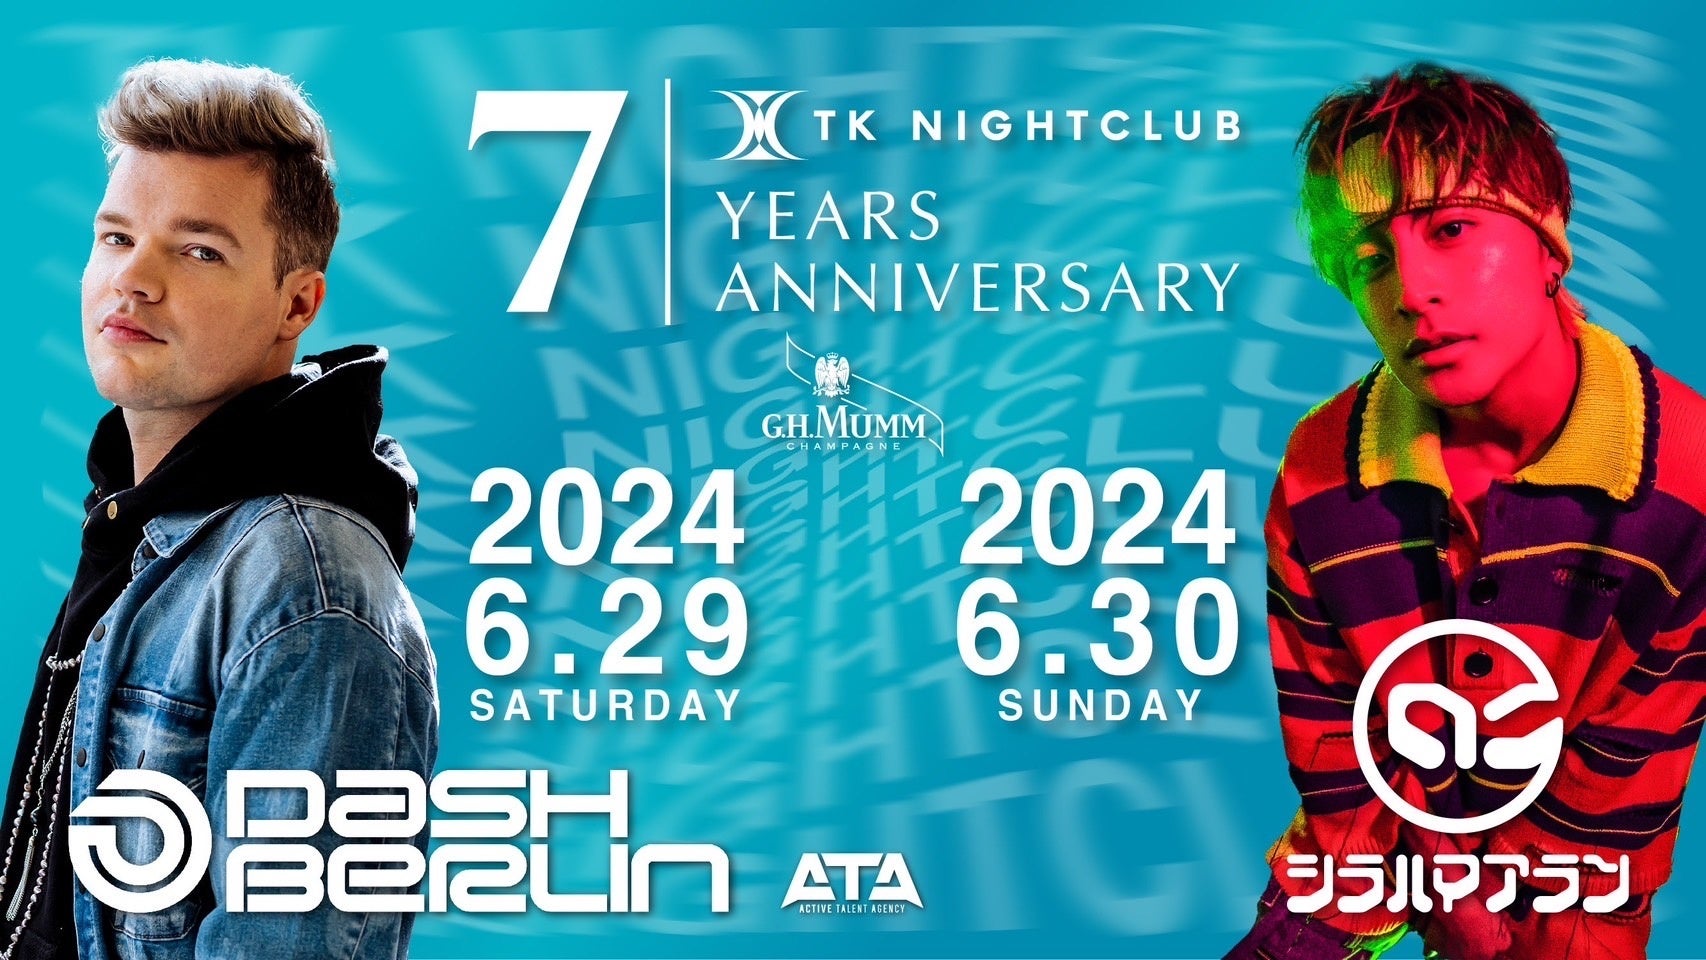 TK NIGHTCLUBが7周年を迎え、Dash BerlinやALAN SHIRAHAMAなど豪華ゲストDJを招いたアニバーサリーイベント月間を6月に実施！